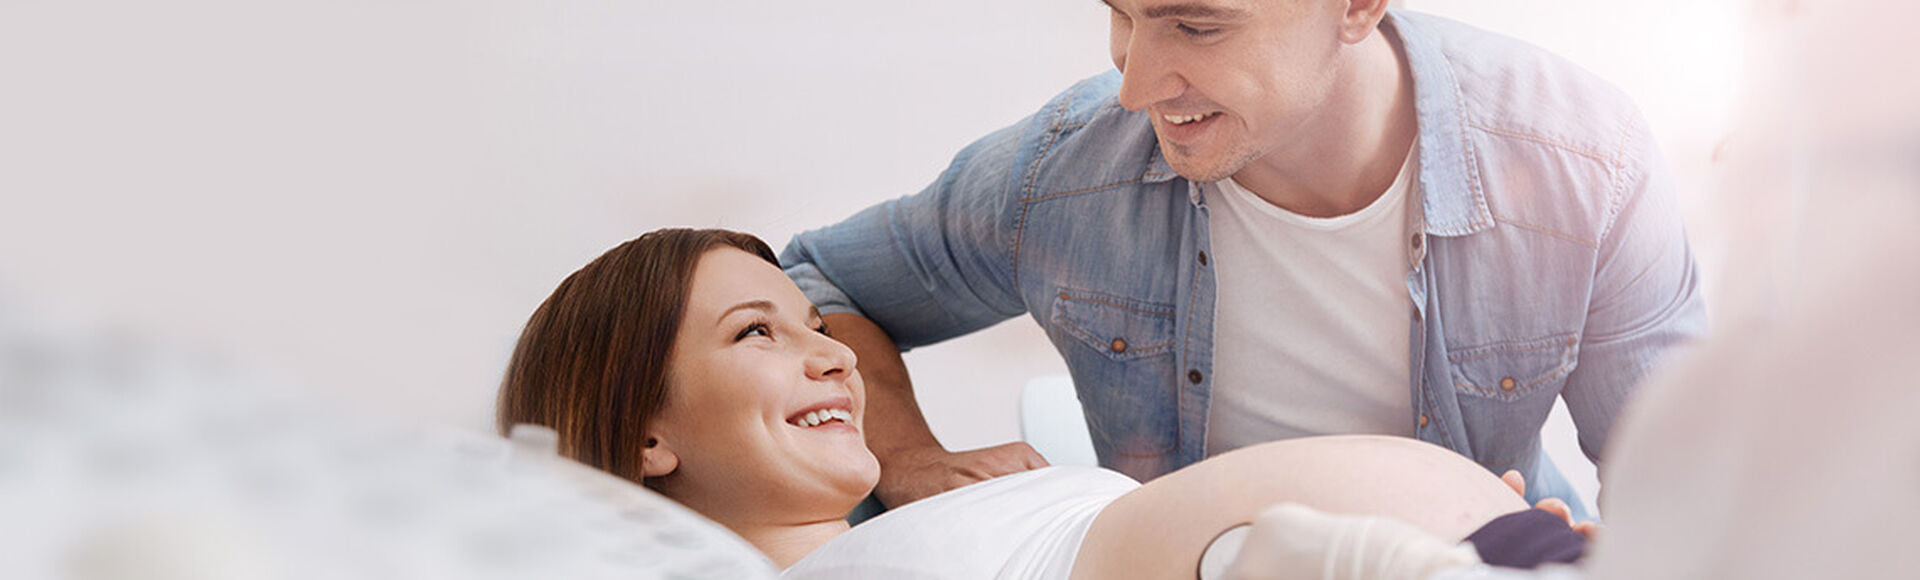 Cambios, síntomas y consejos para la mitad del embarazo | by Huggies Argentina